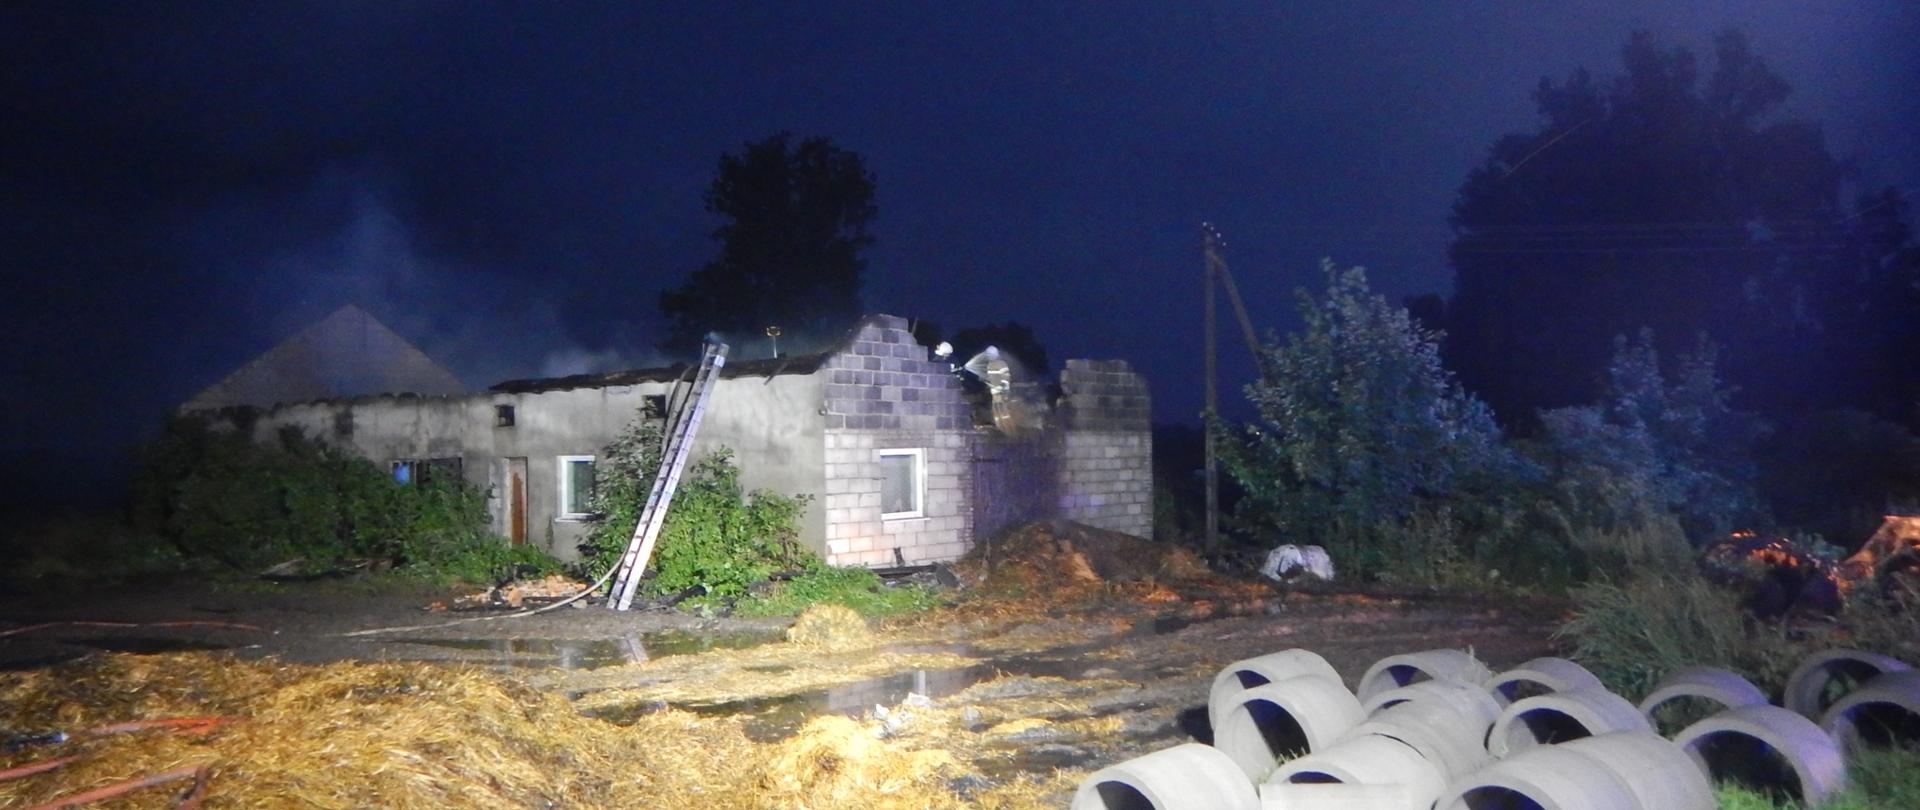 Zdjęcie przedstawia budynek obory, który uległ spaleniu. Na zdjęciu widać strażaków pracujących przy rozbiórce konstrukcji.